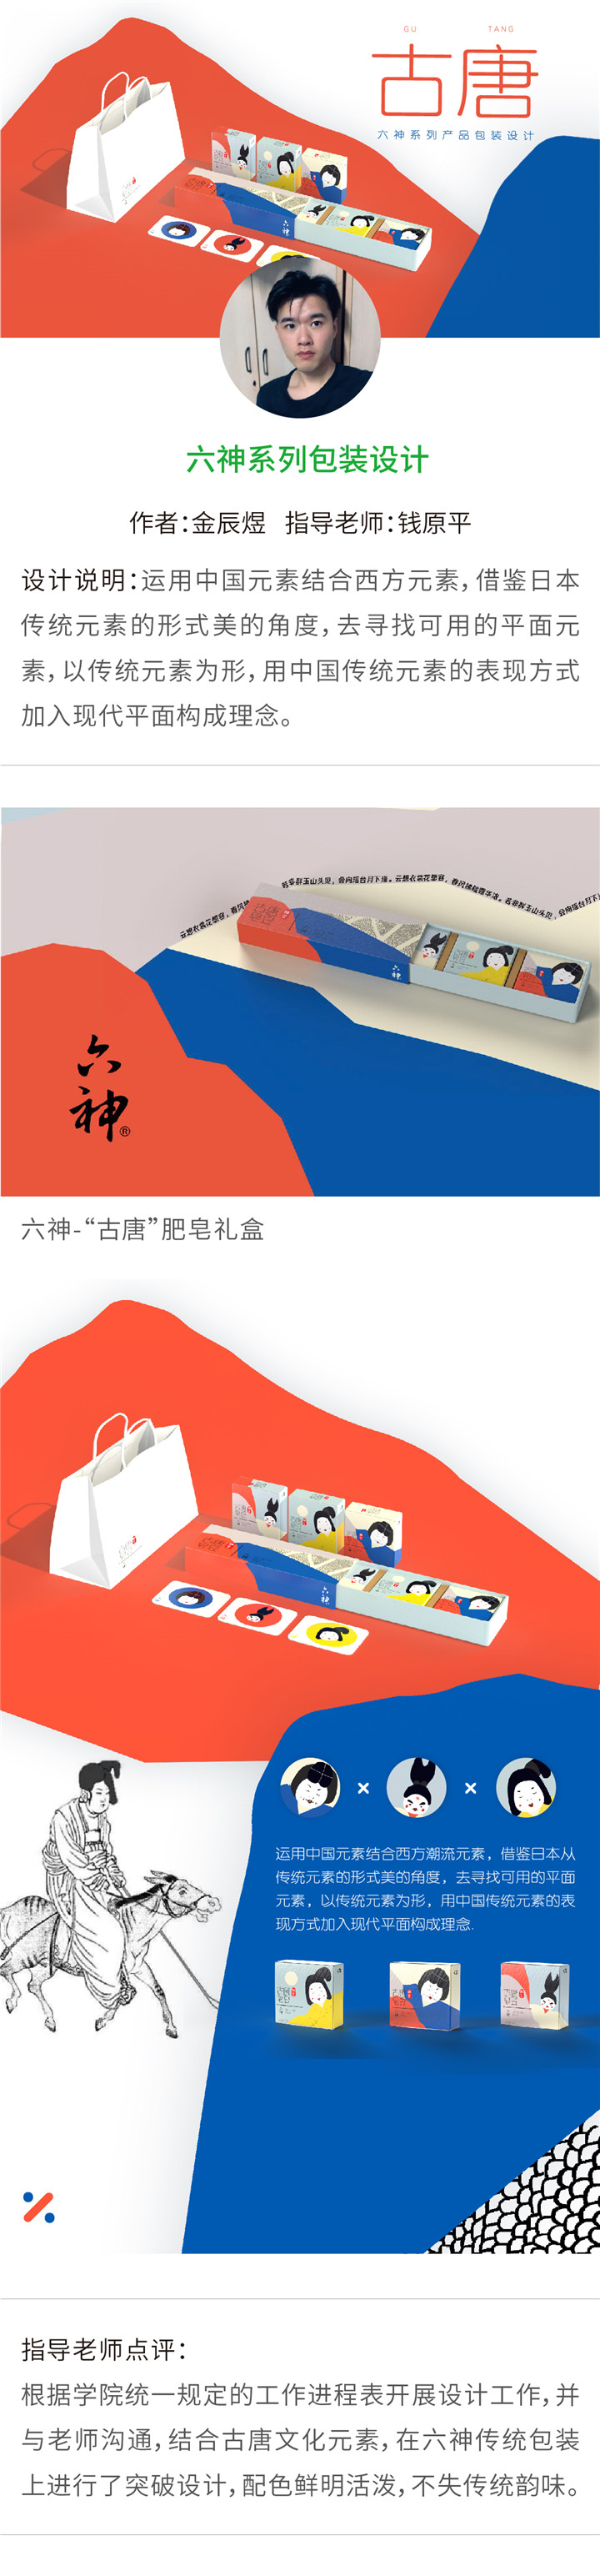 视觉传达——六神系列包装设计-设计中国